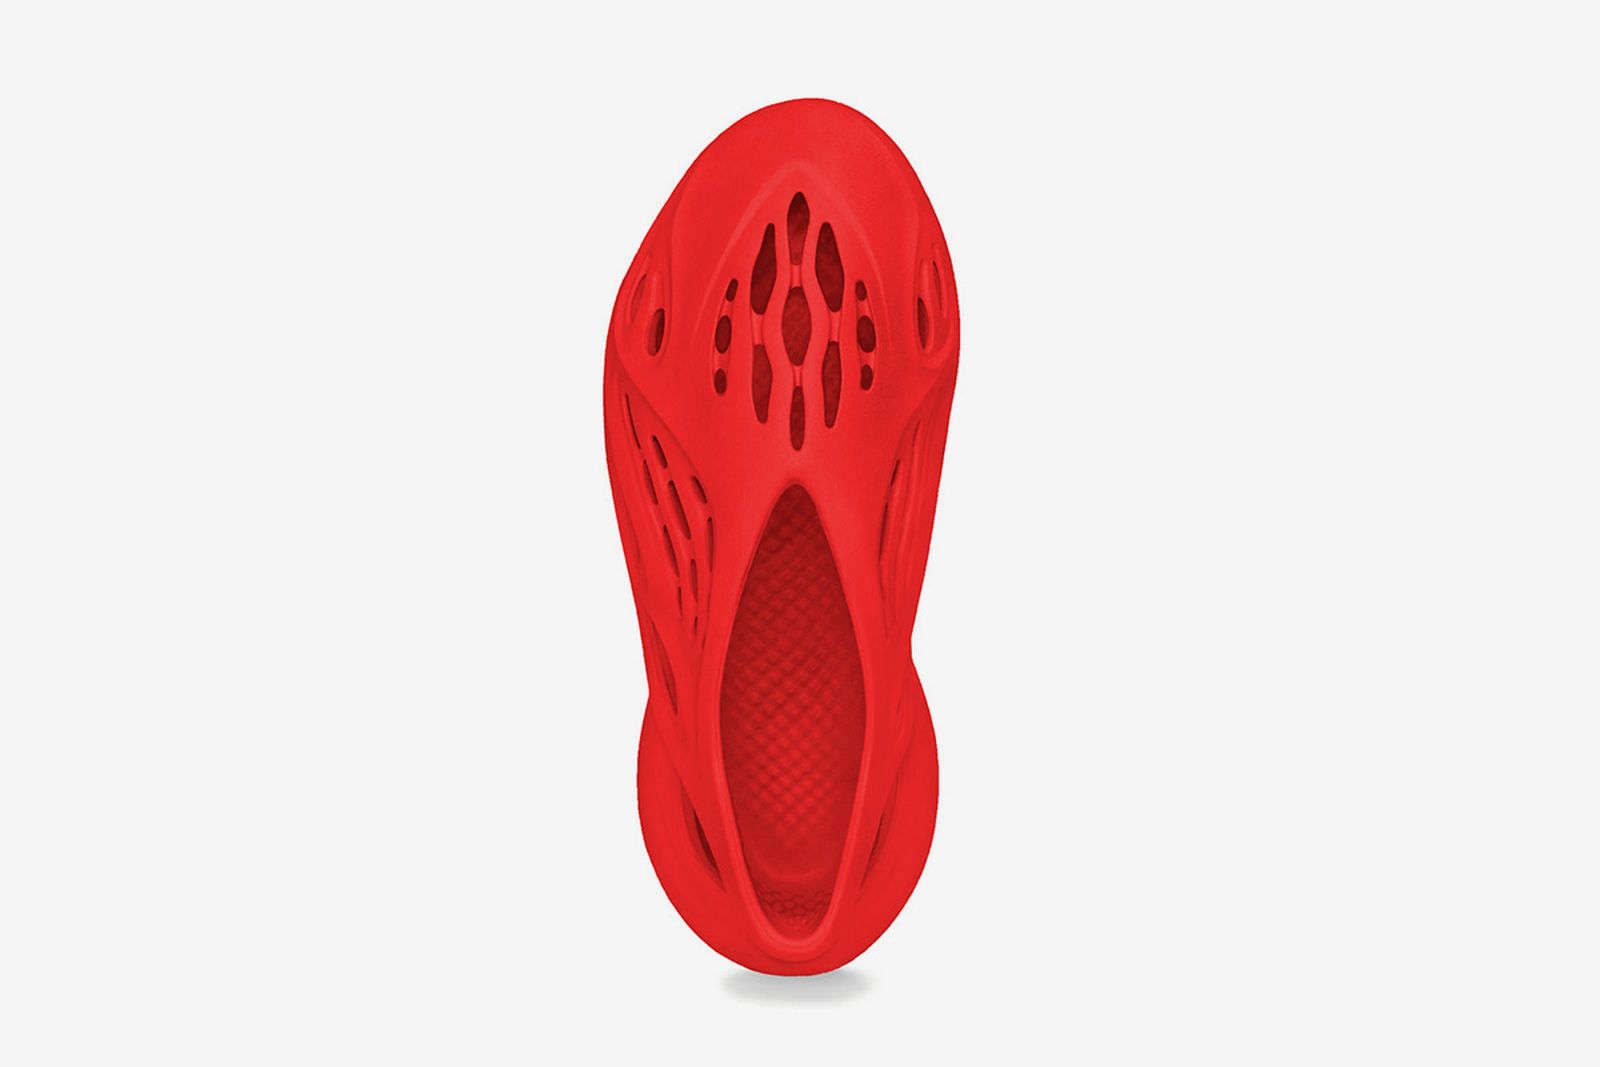 adidas-yeezy-foam-runner-vermilion-release-date-price-02